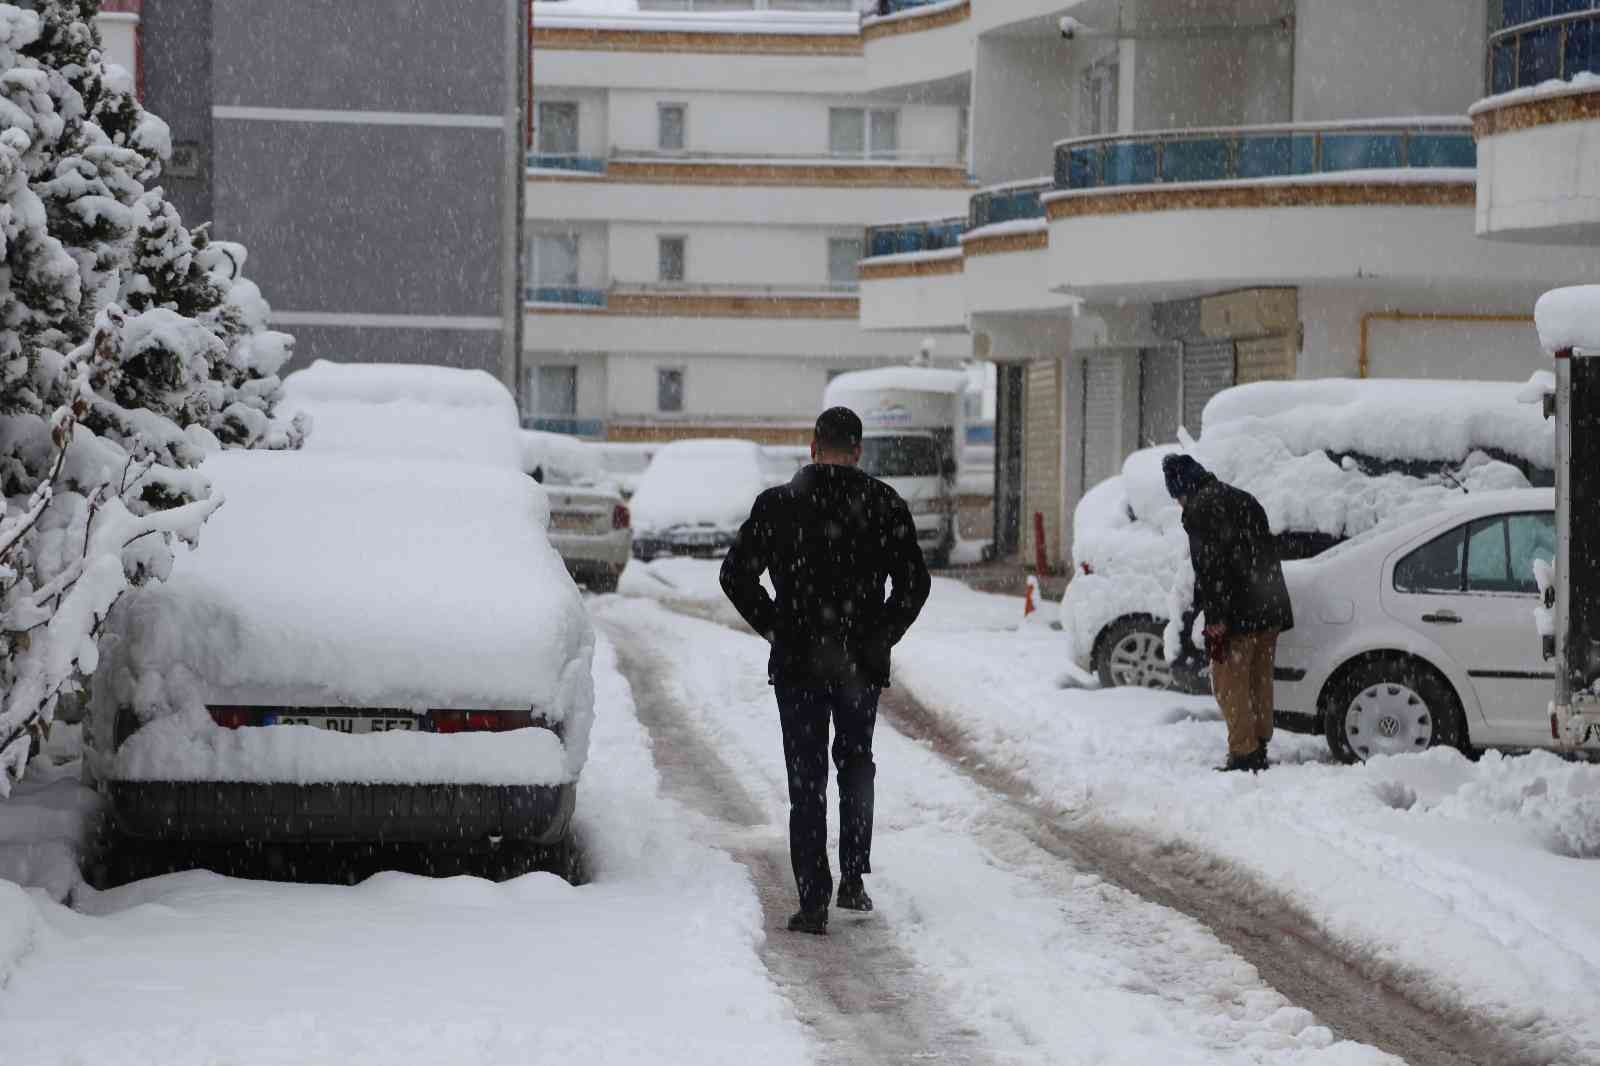 Kastamonu’da kar nedeniyle okullar tatil edildi #kastamonu